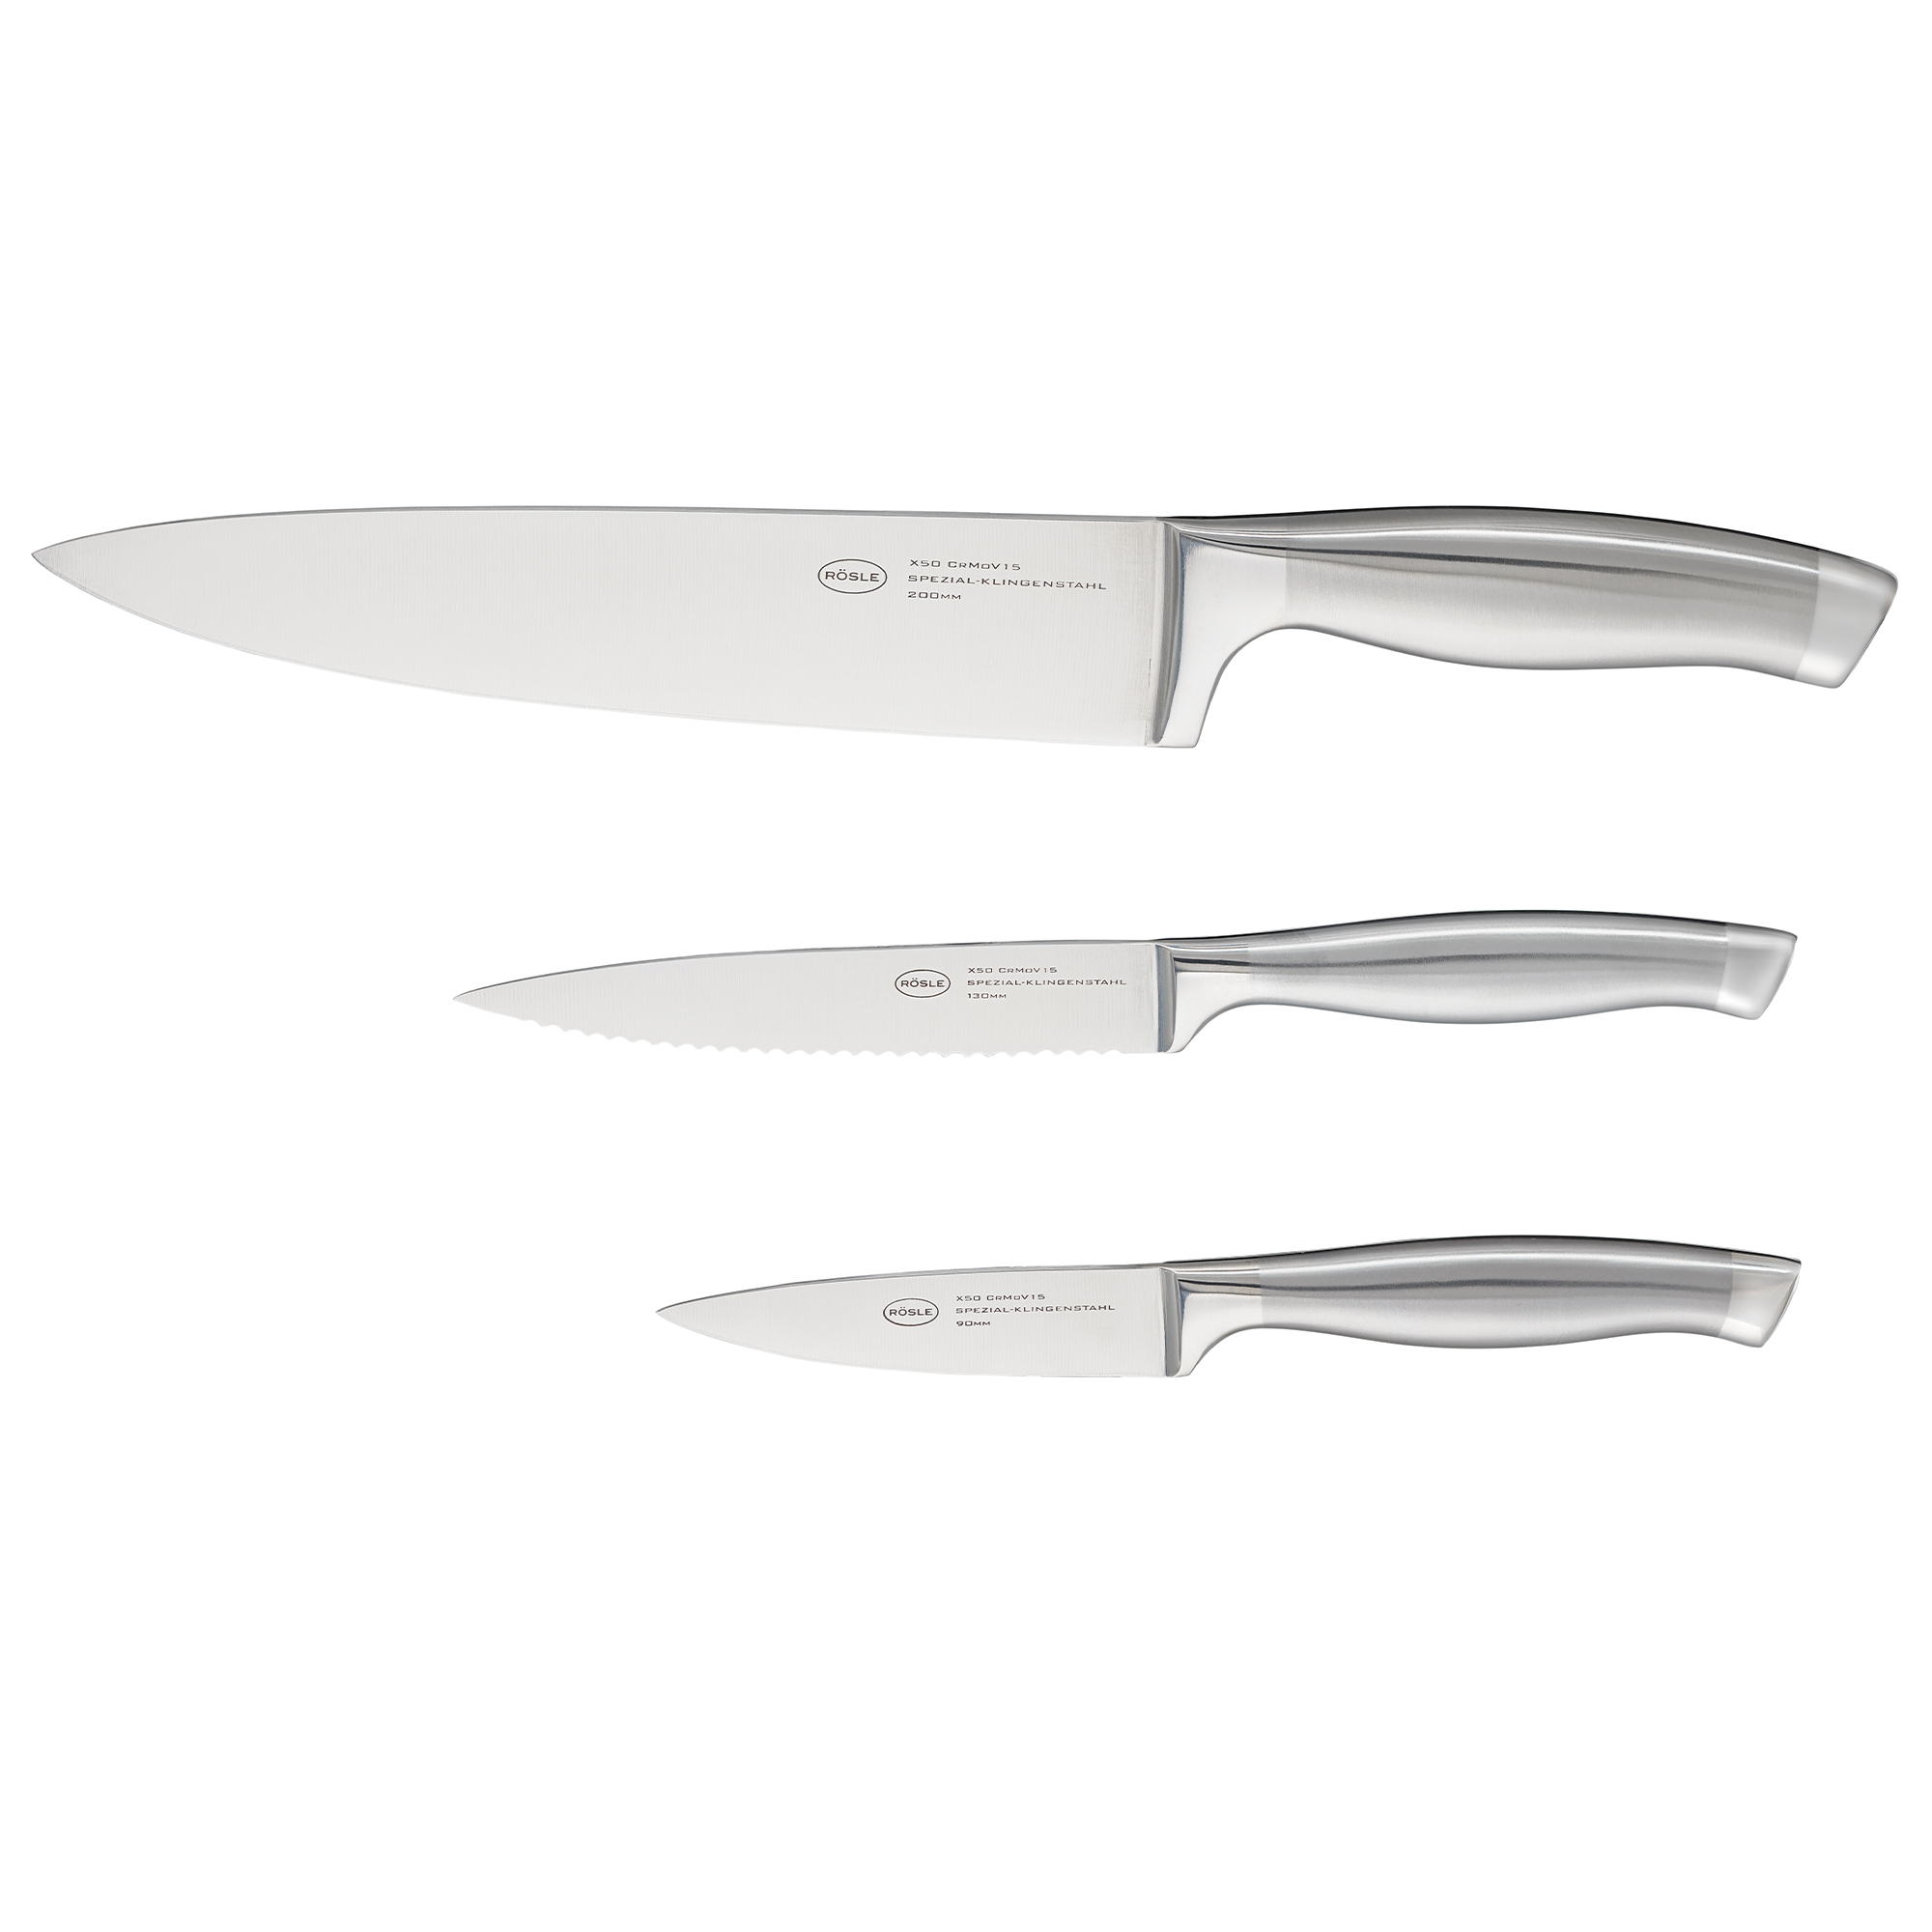 Universal knife BASIC LINE 13 cm I 5.1 in.